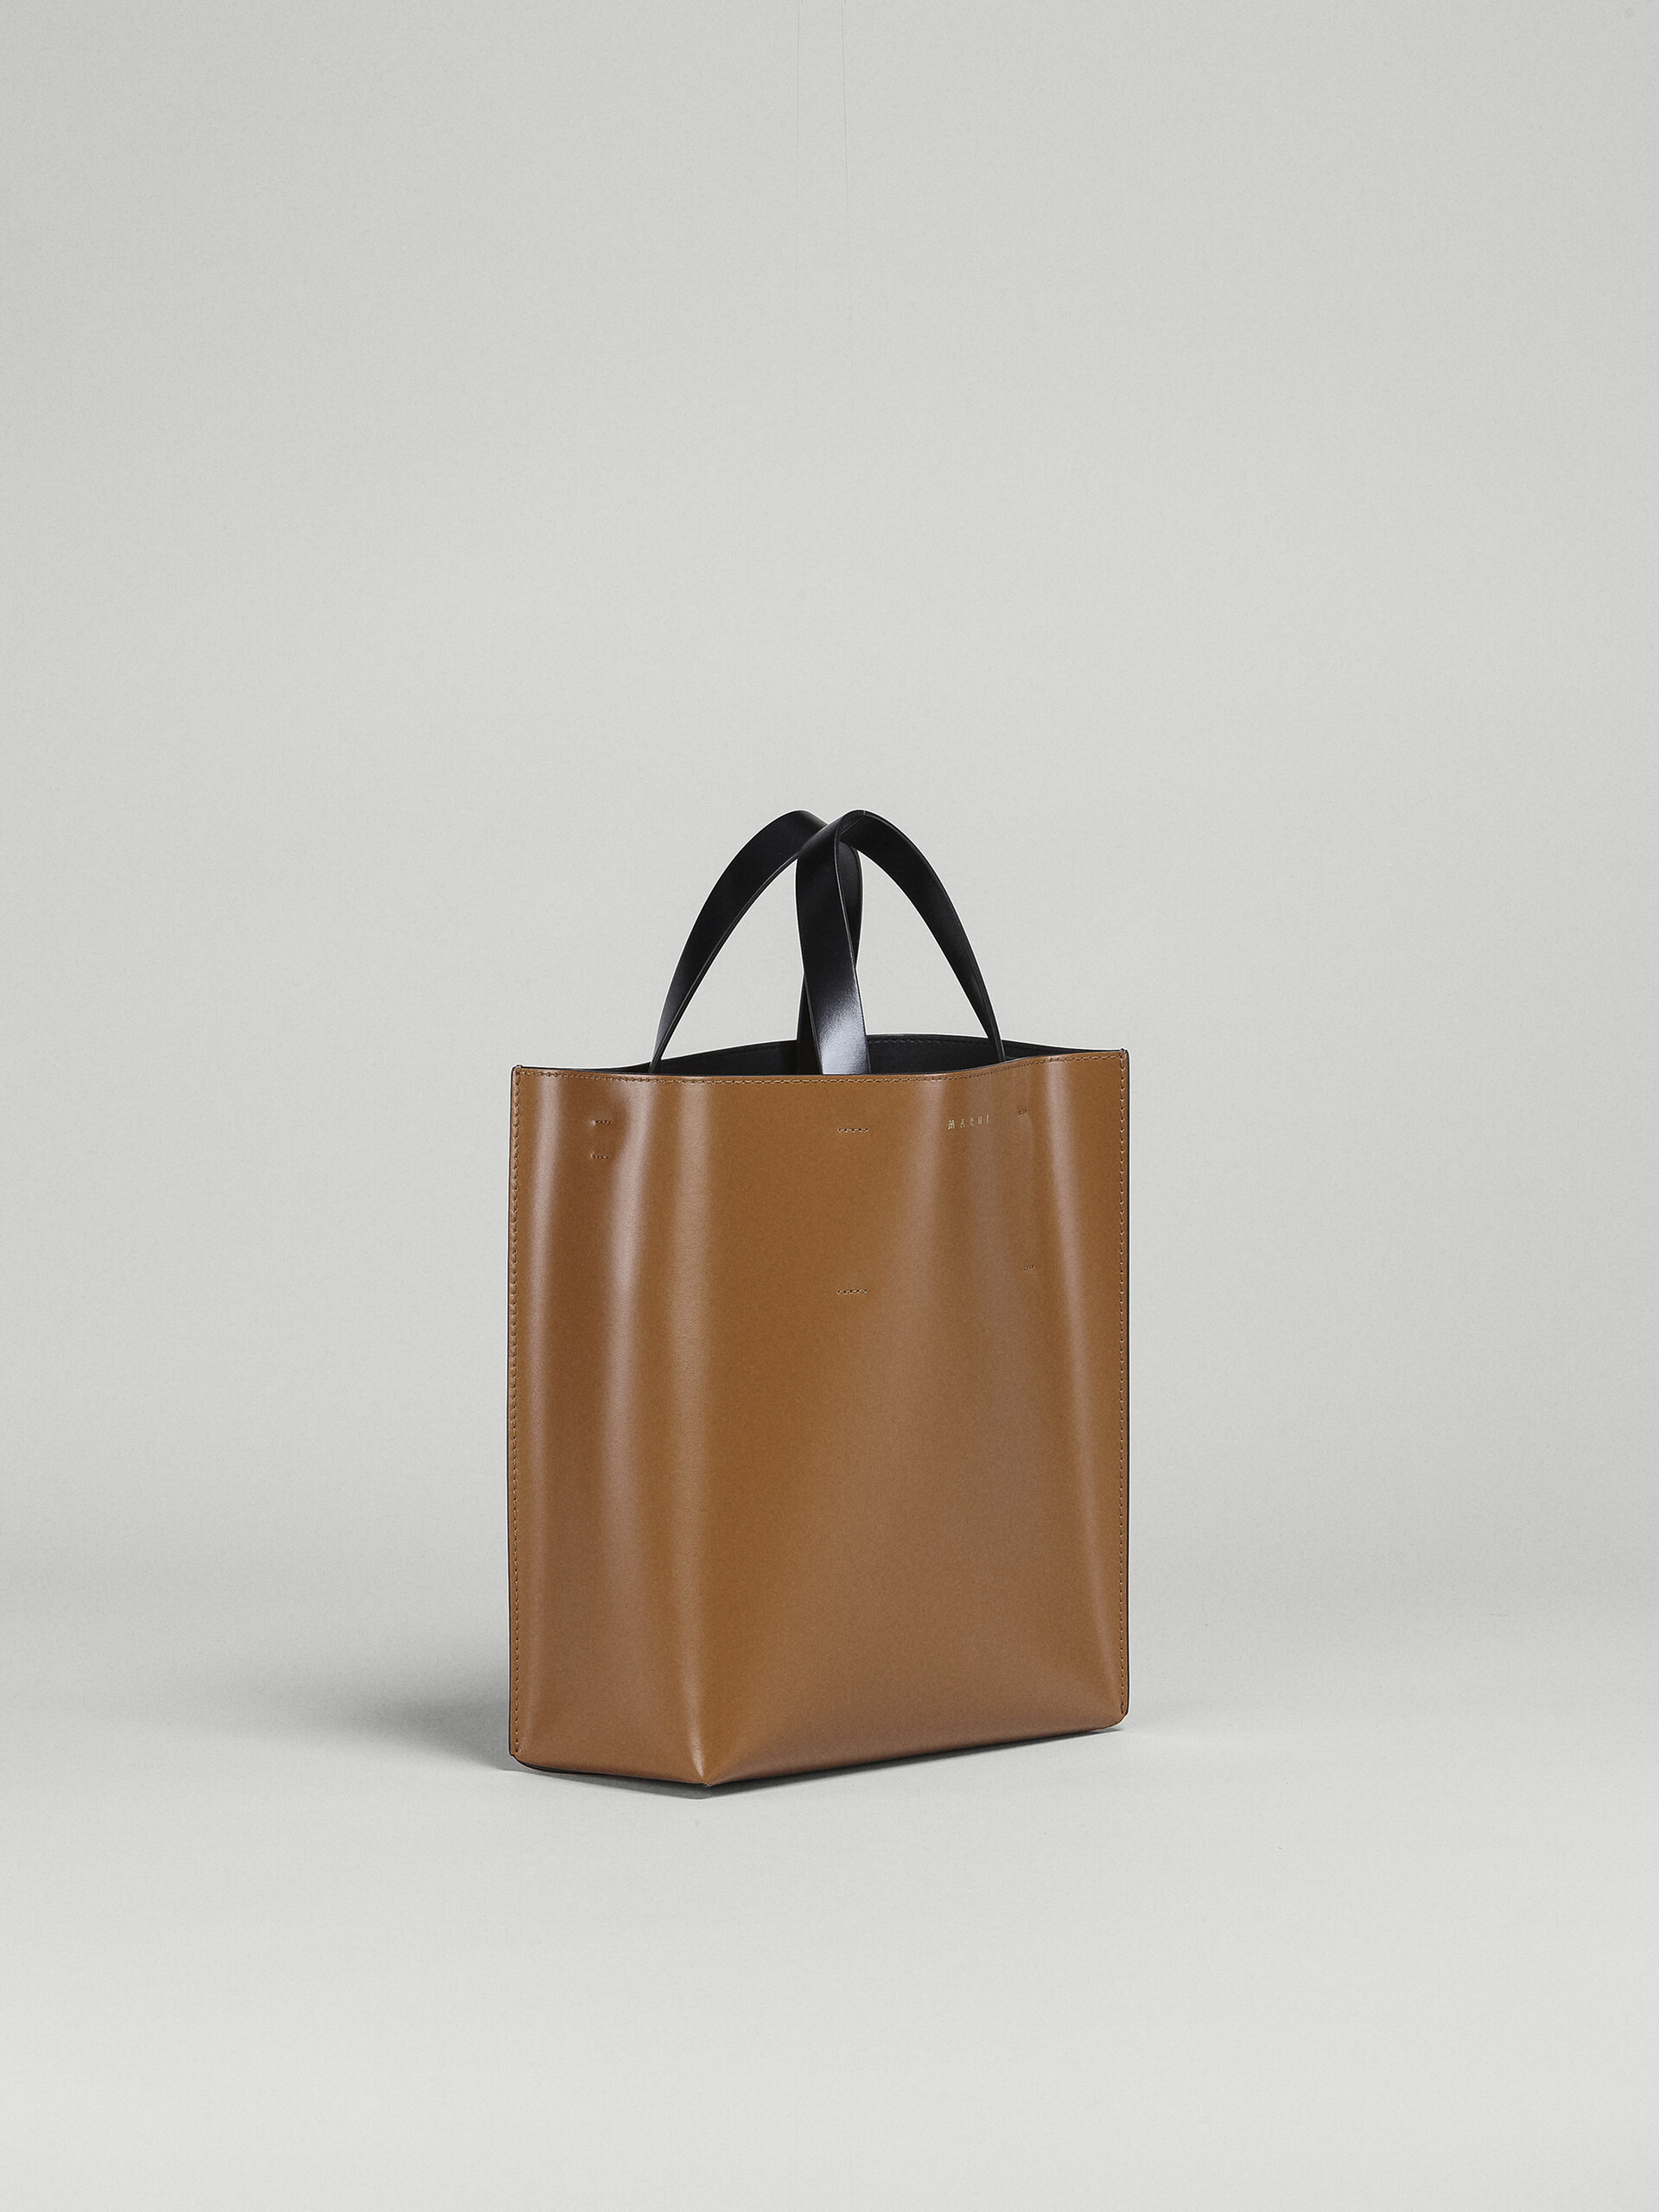 【MARNI】Leather Shopping Bag Brown